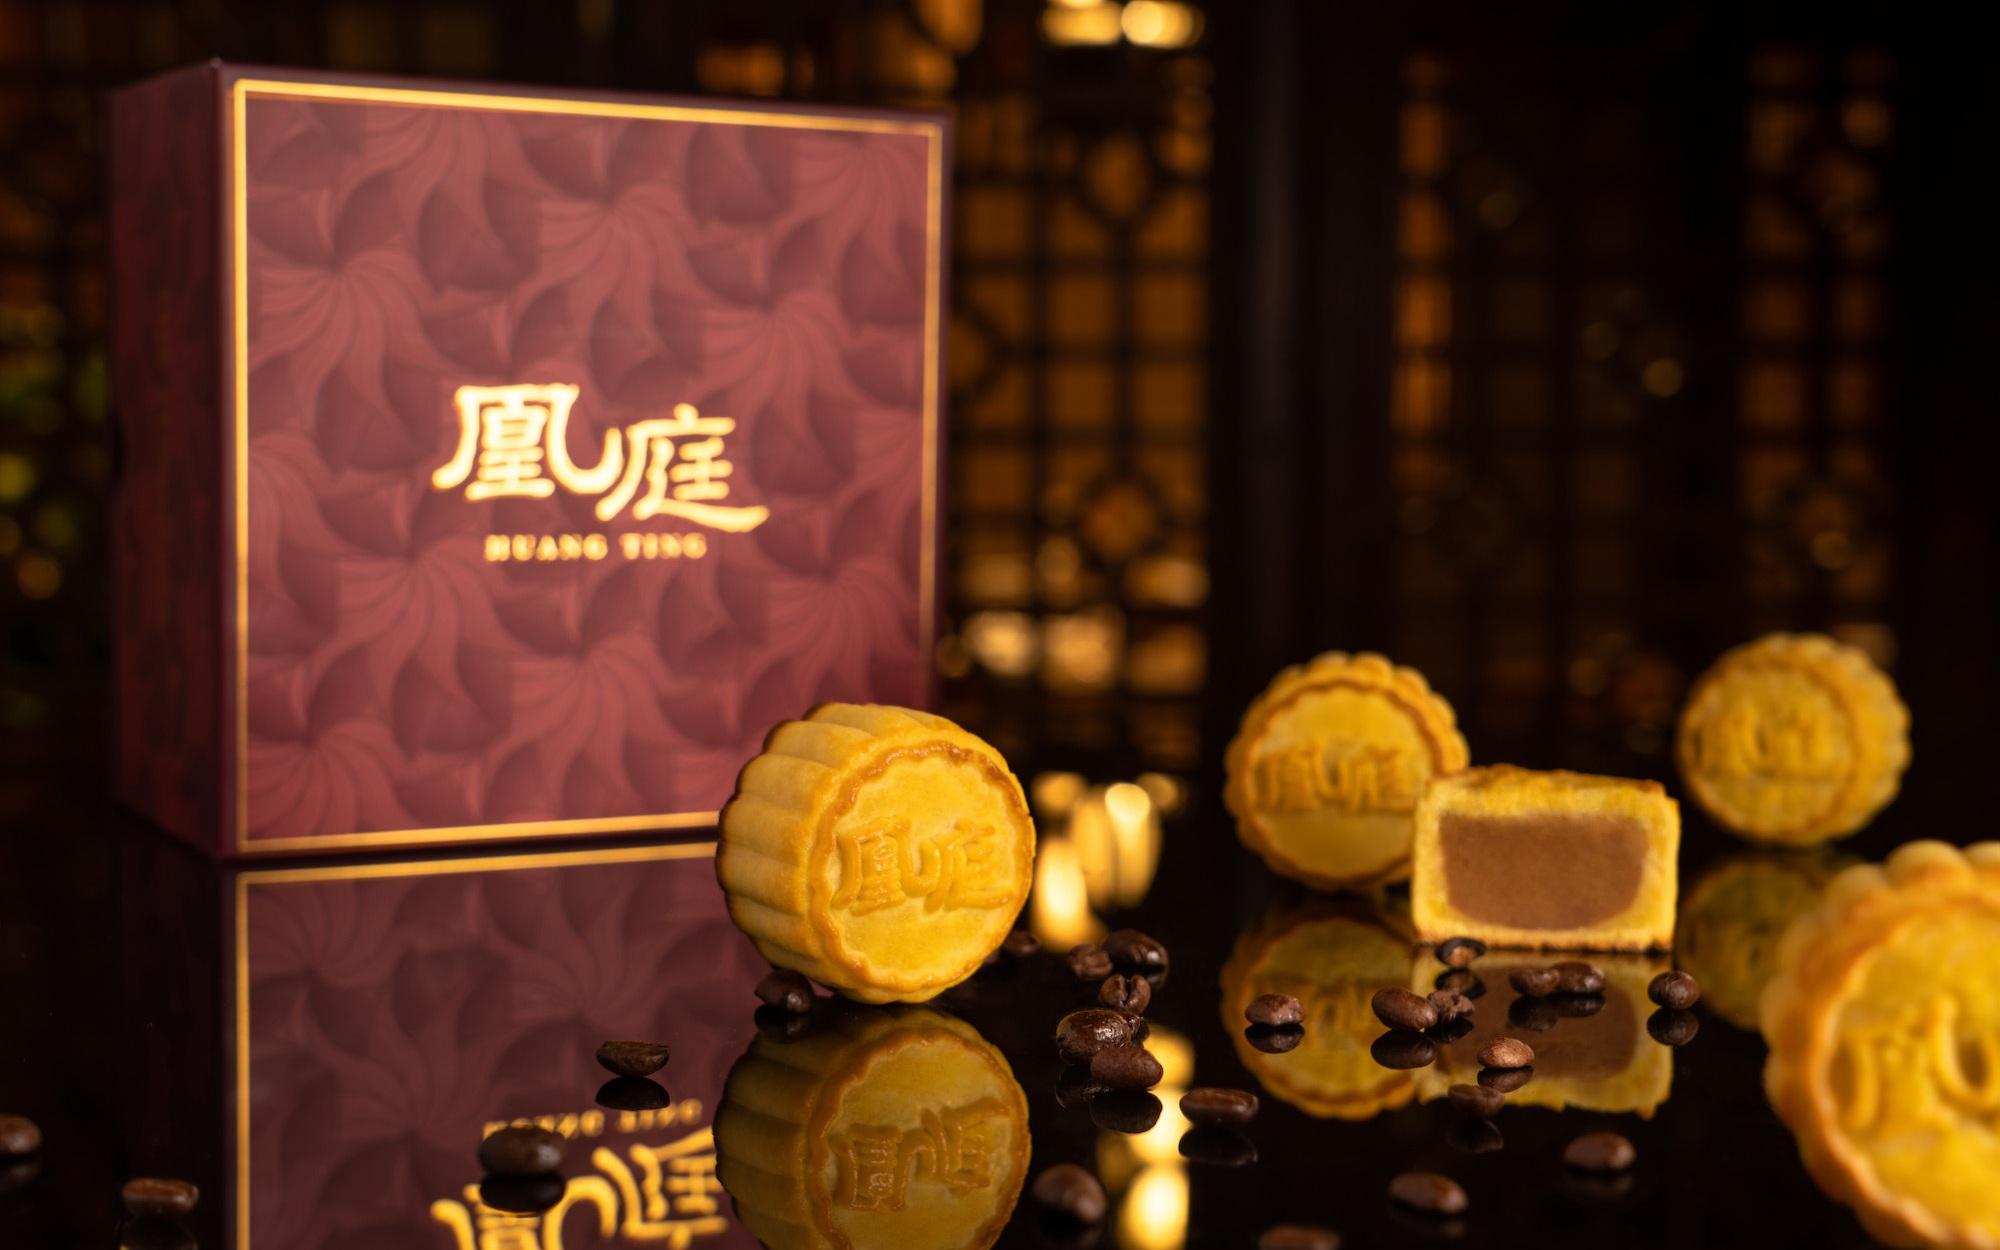 凰庭中餐厅首次推出自制咖啡巧克力焦糖口味月饼。